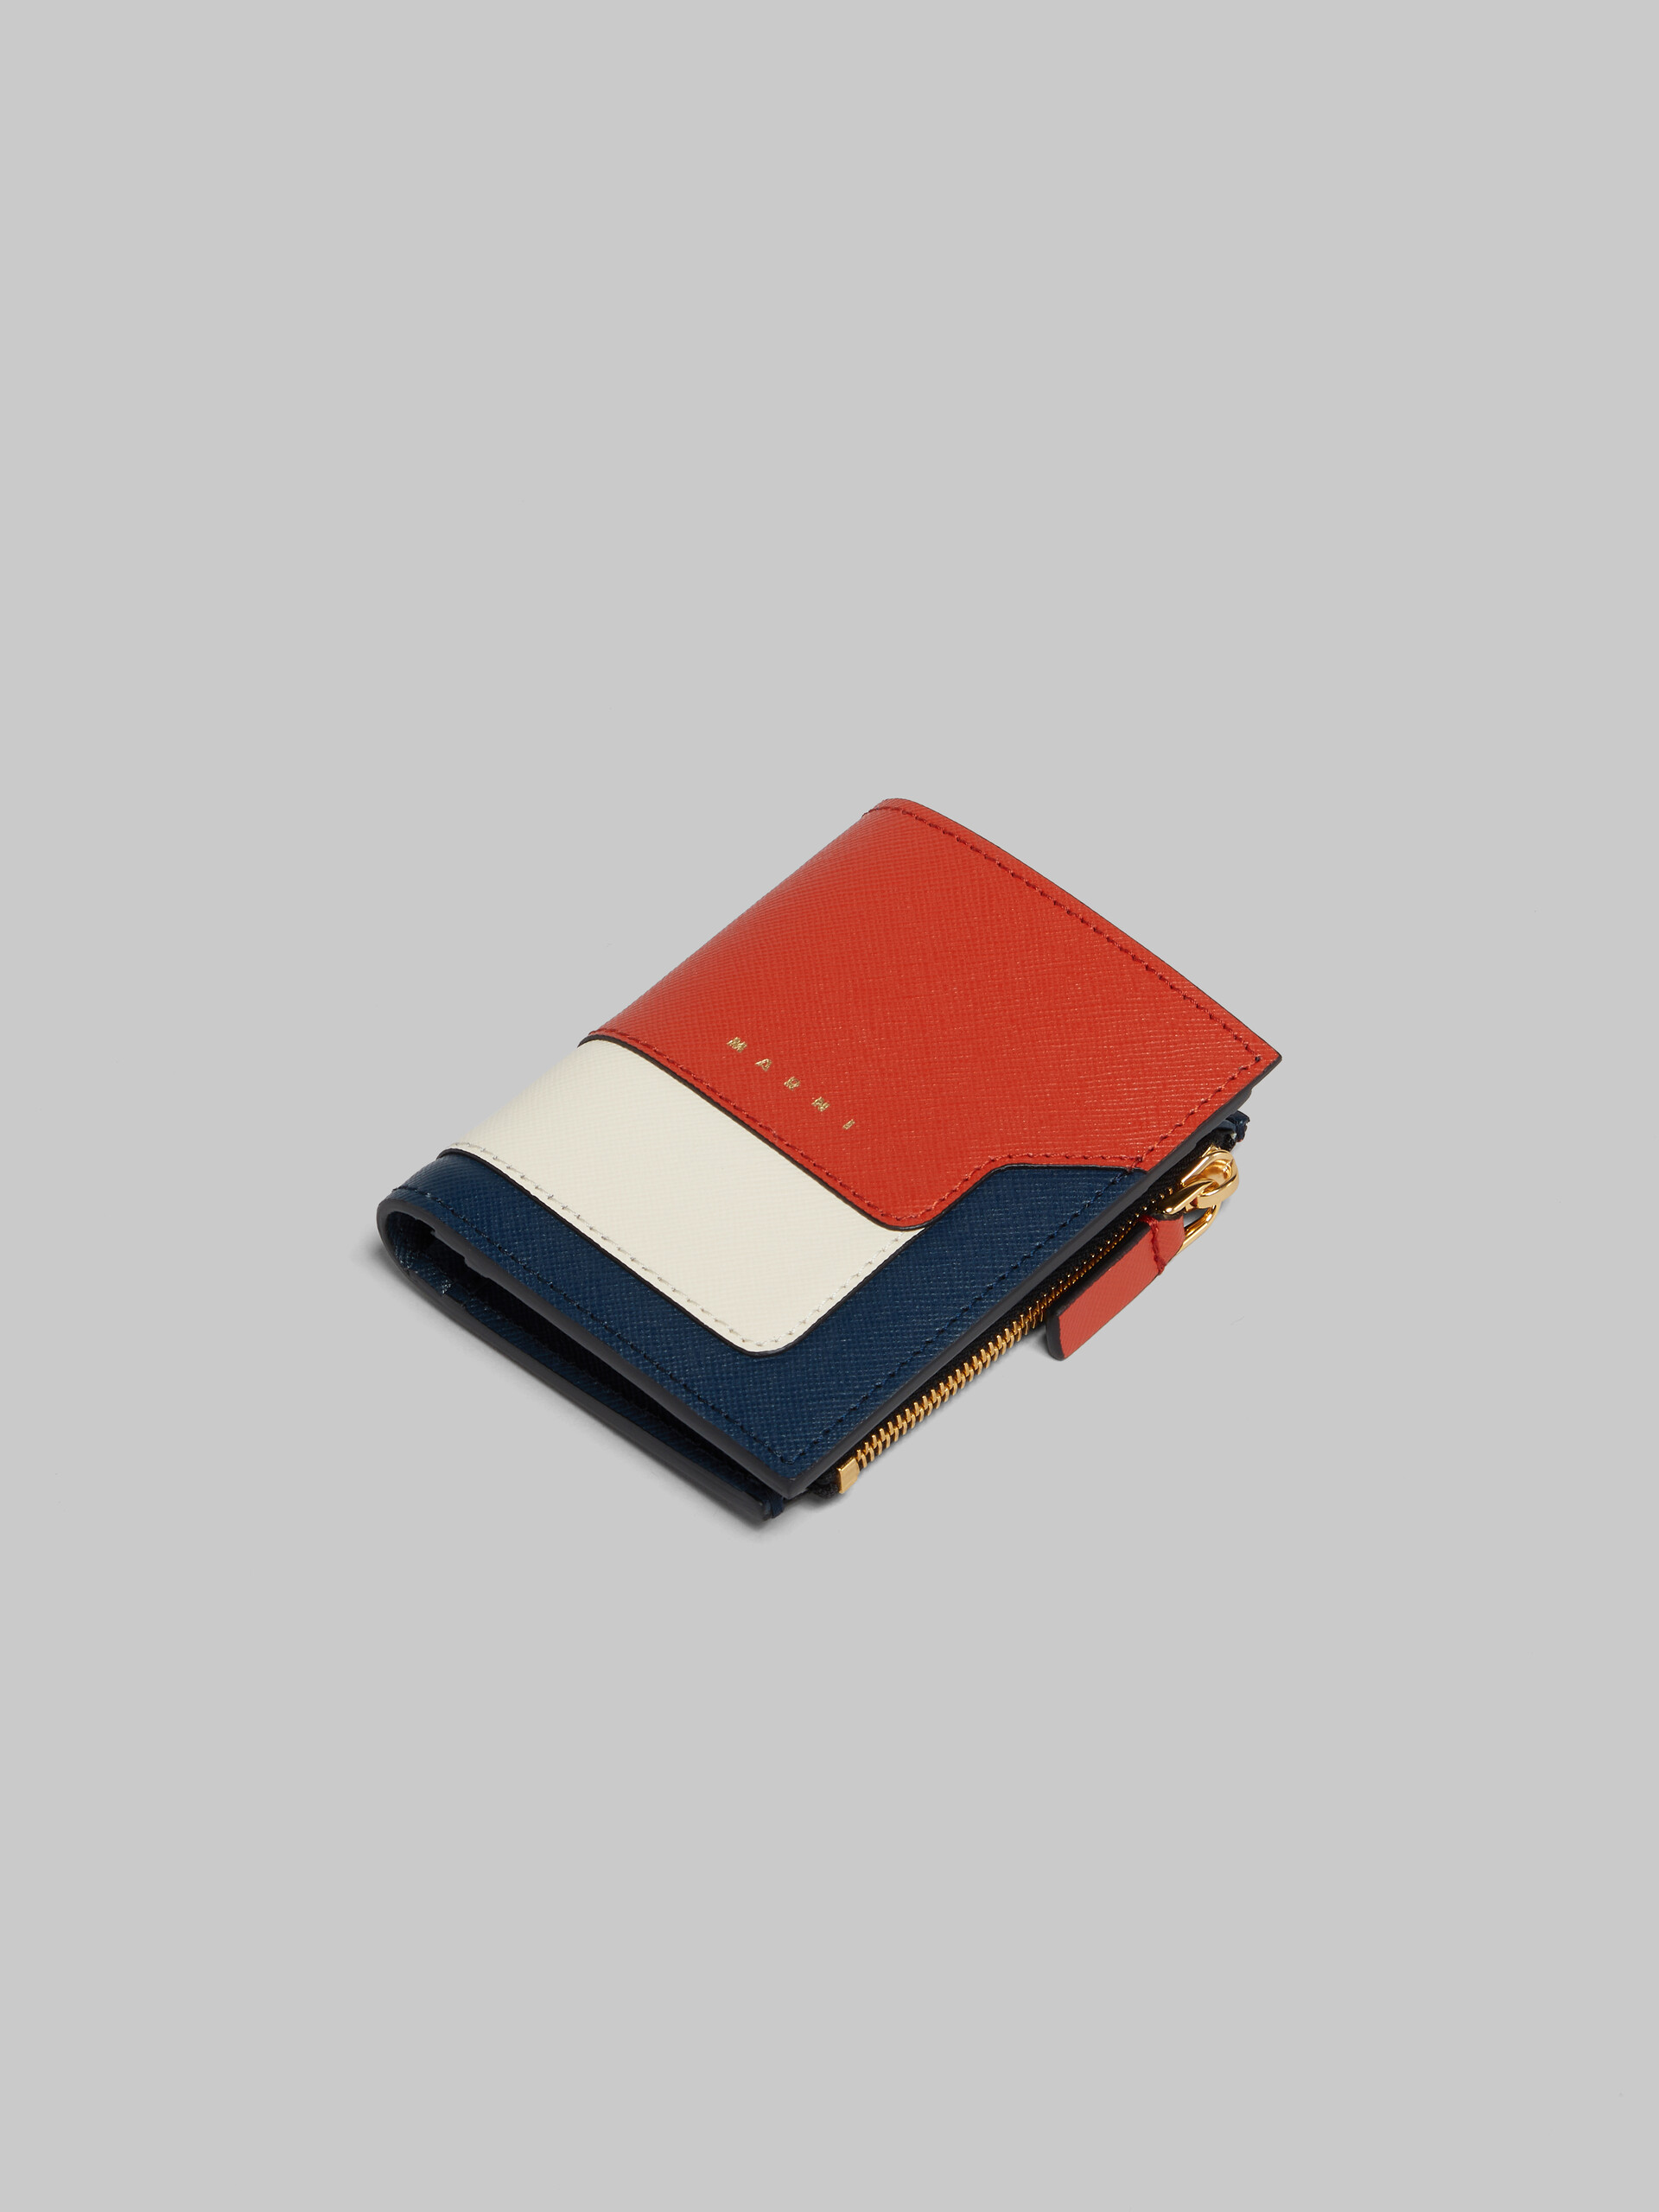 オレンジ クリーム ディープブルー サフィアーノレザー製 二つ折りウォレット - 財布 - Image 5